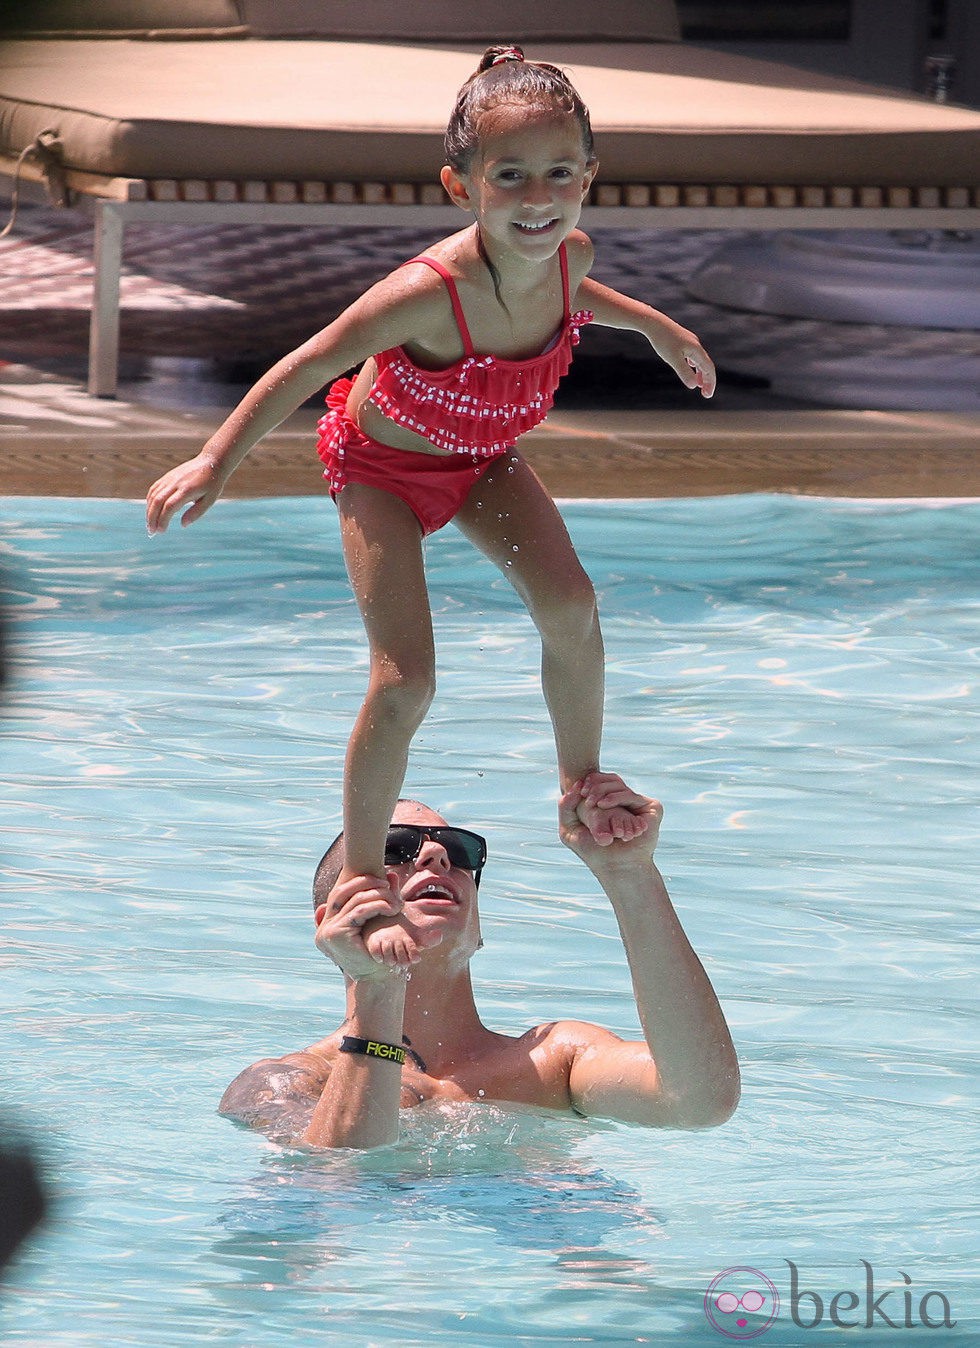 Casper Smart y Emme, la hija de Jennifer Lopez, disfrutando de un día de piscina